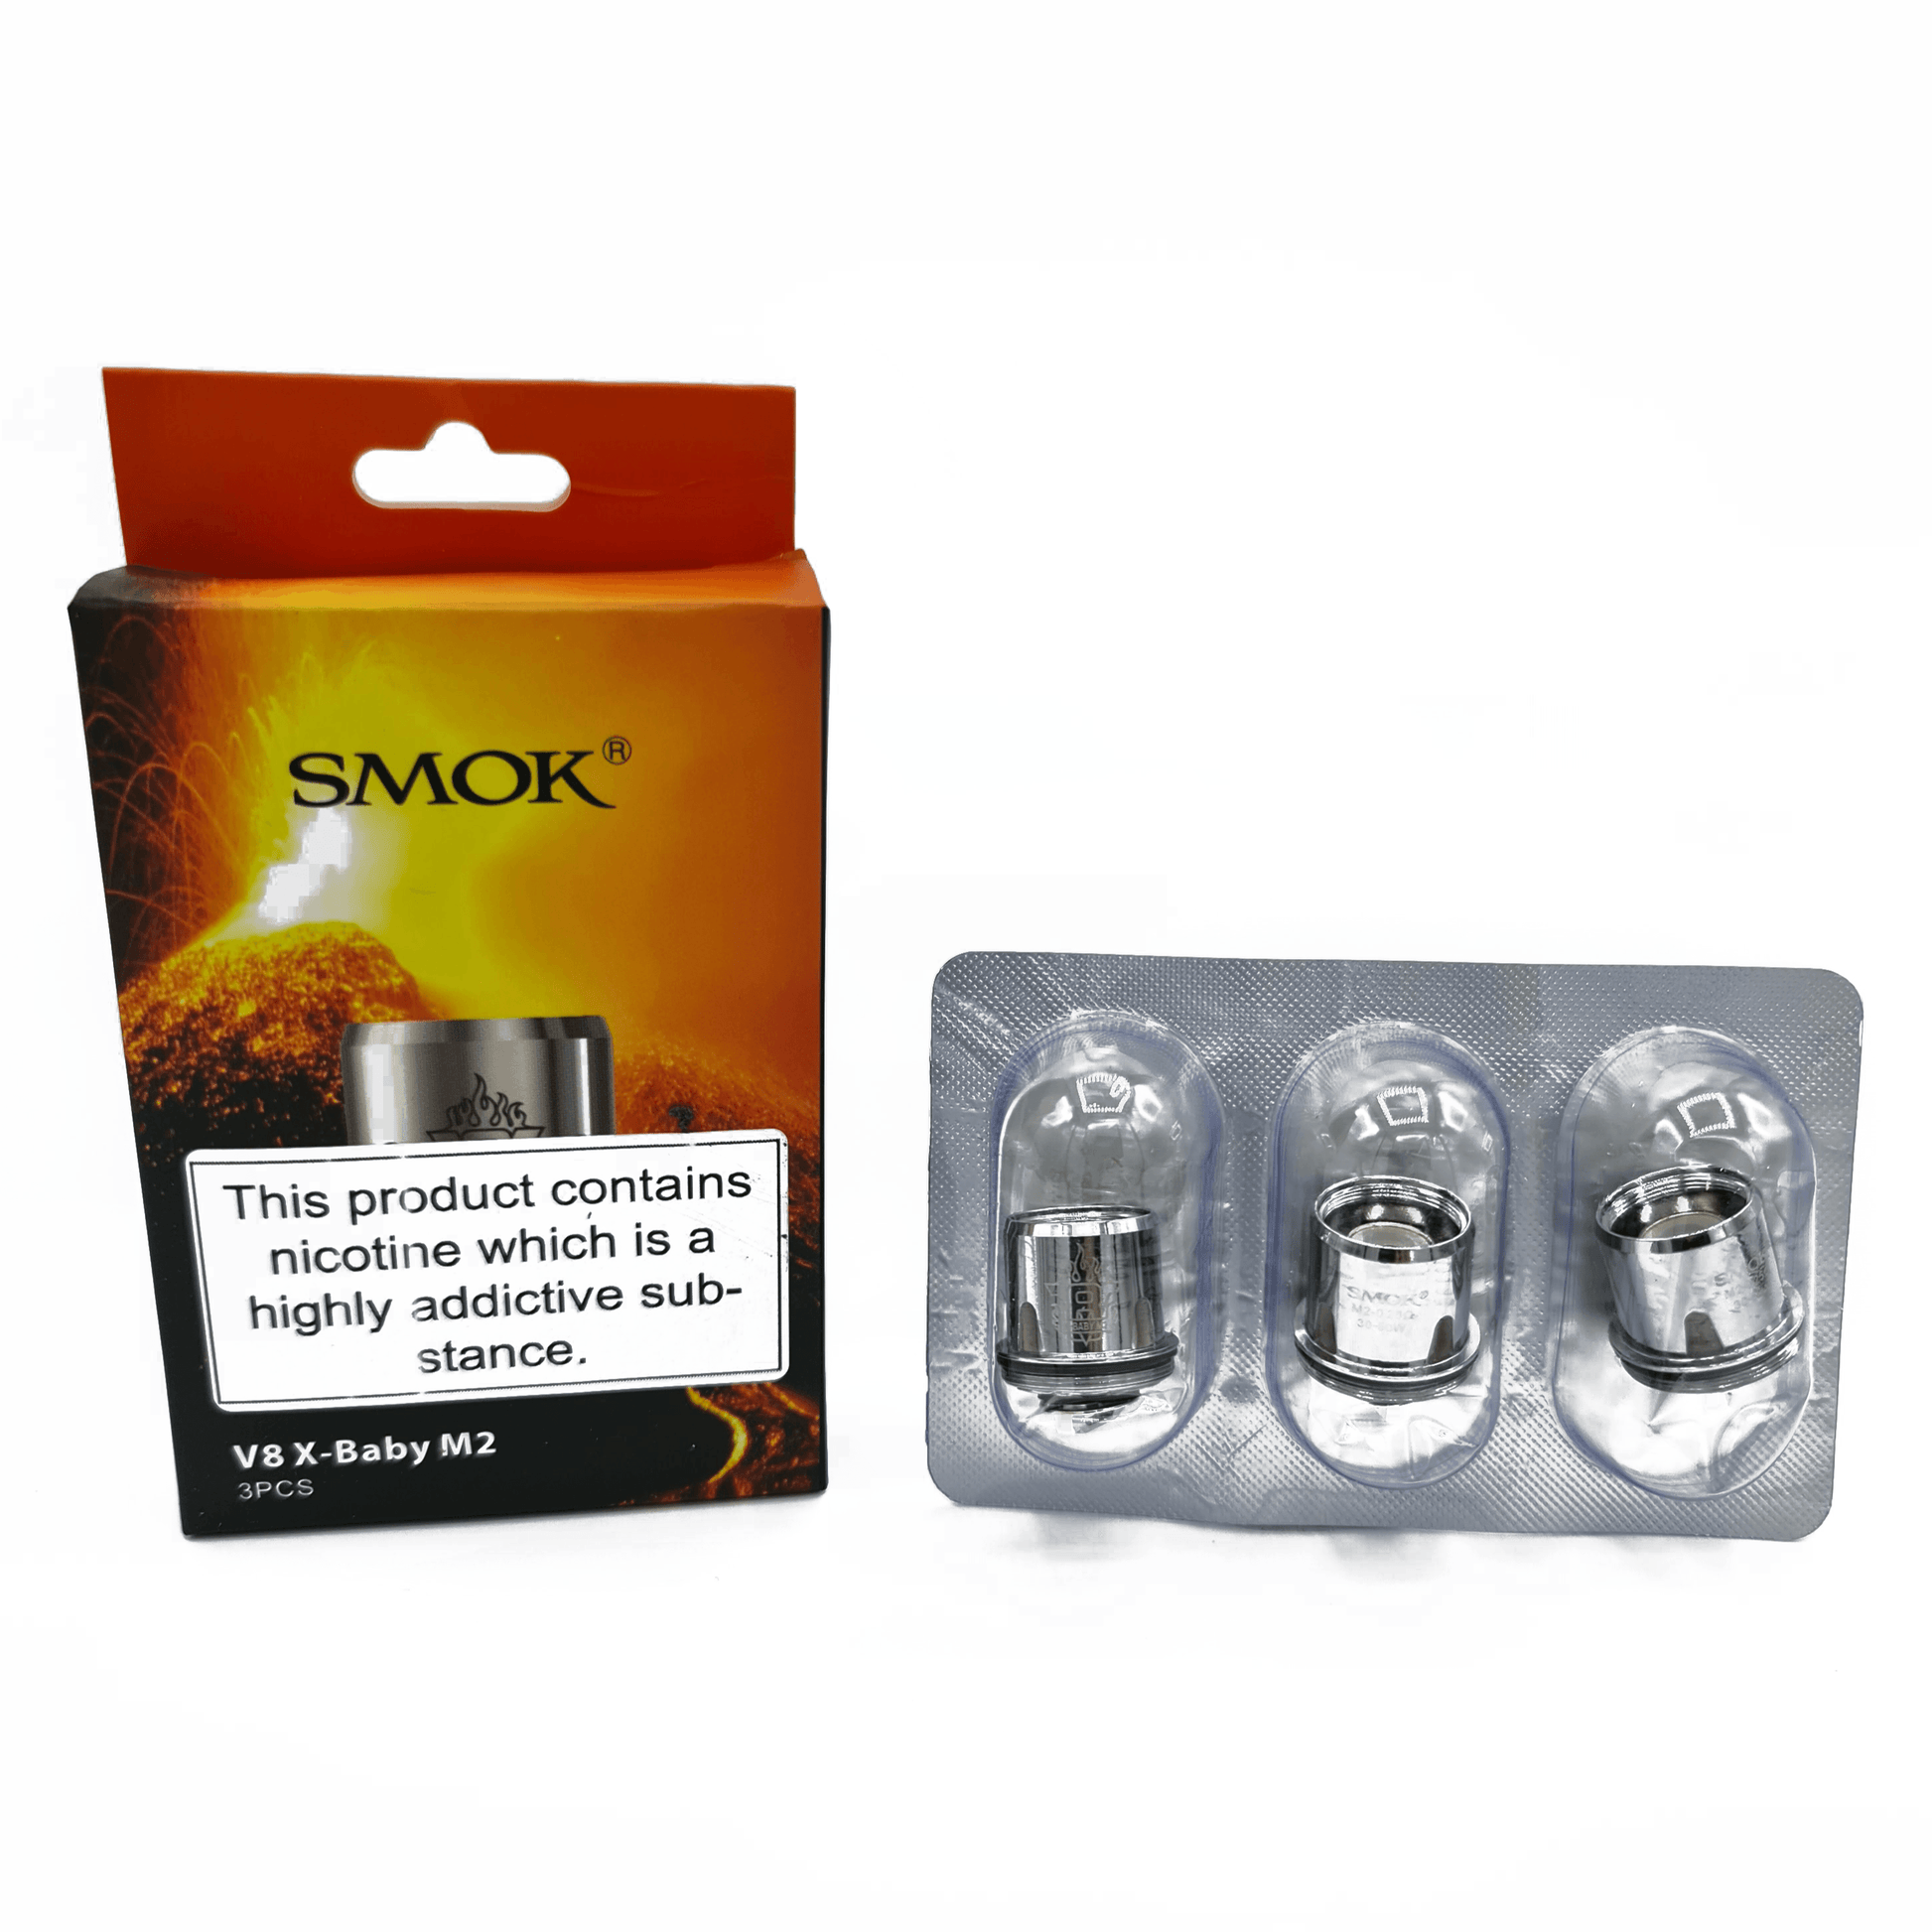 SMOK V8 X-Baby M2 Coil 1pcs - Vaper Aid